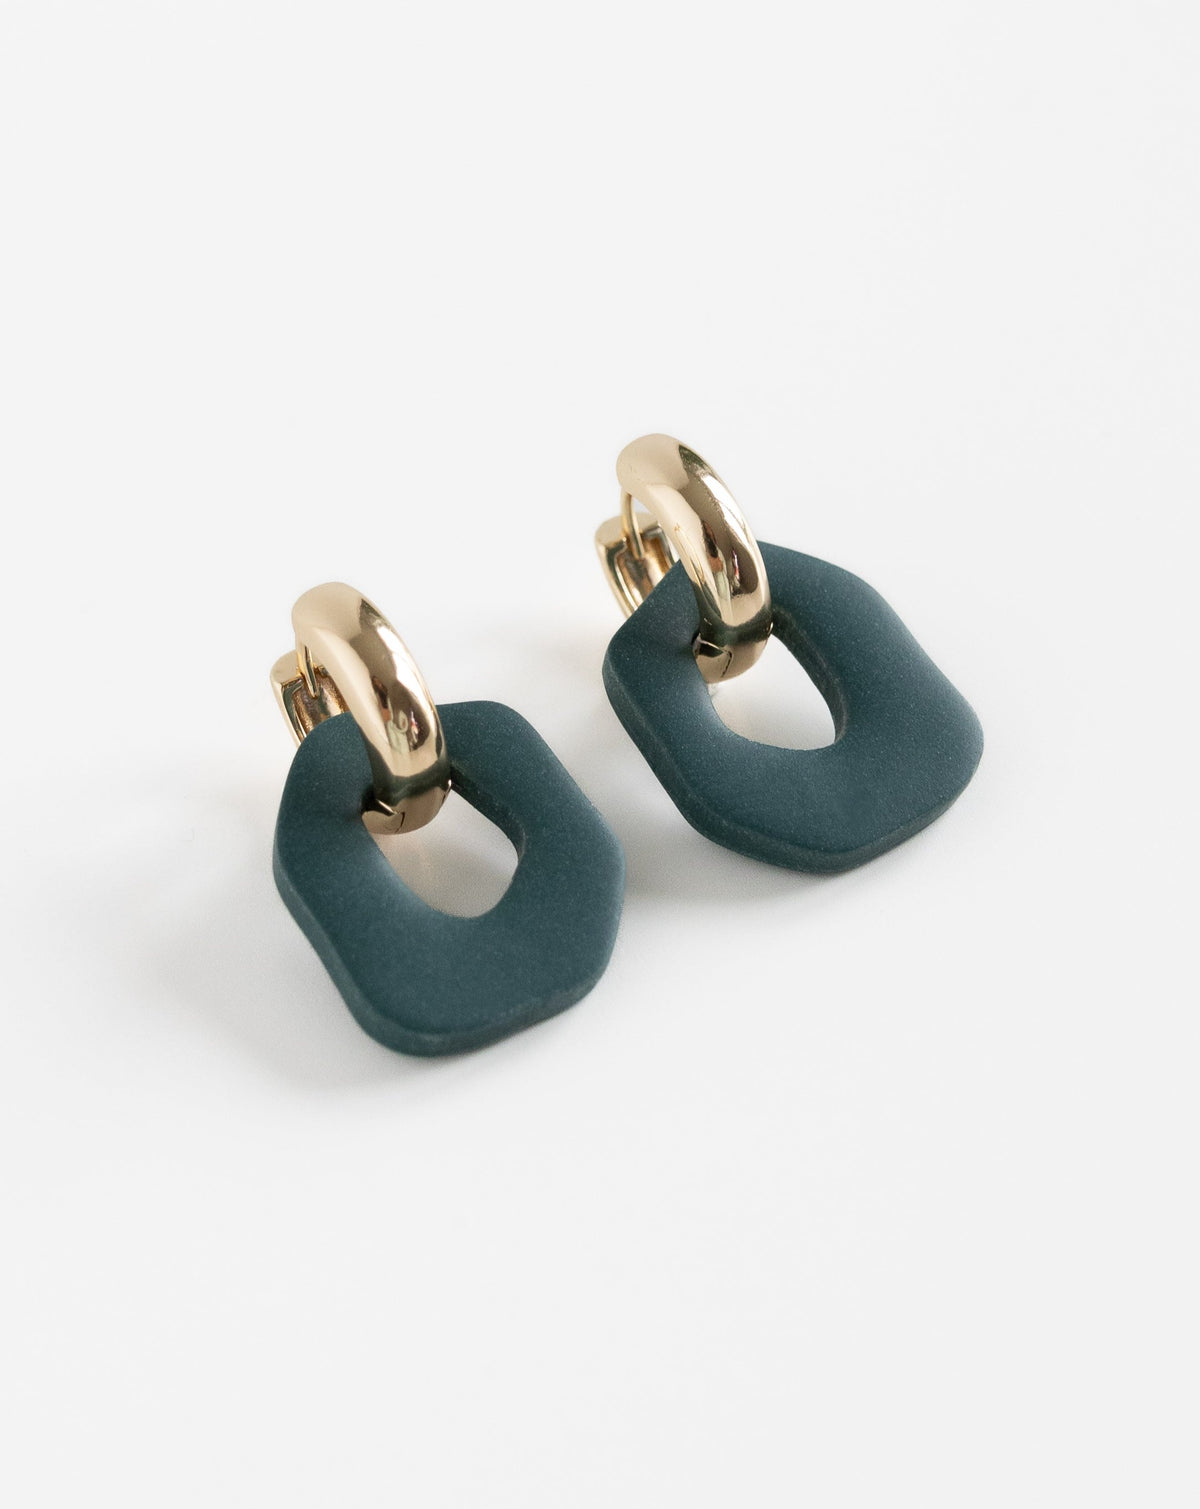 Darien earrings in Pine with gold hoops, side view